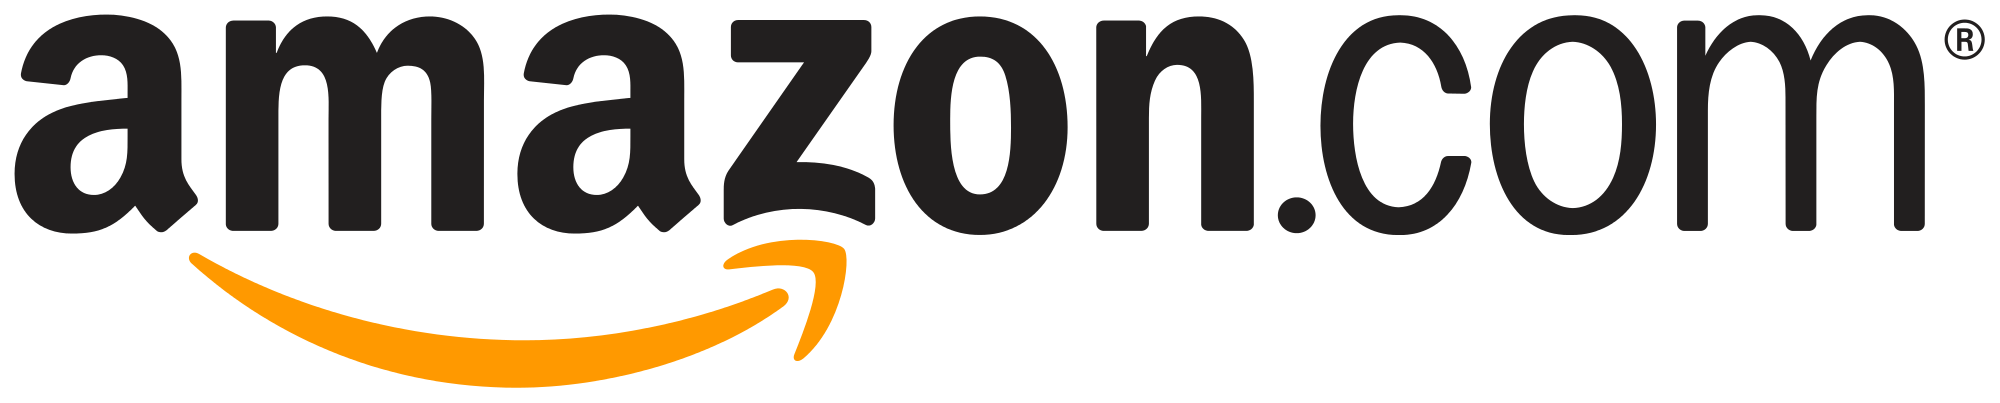 Anazon Logo - Amazon Logo transparent PNG - StickPNG